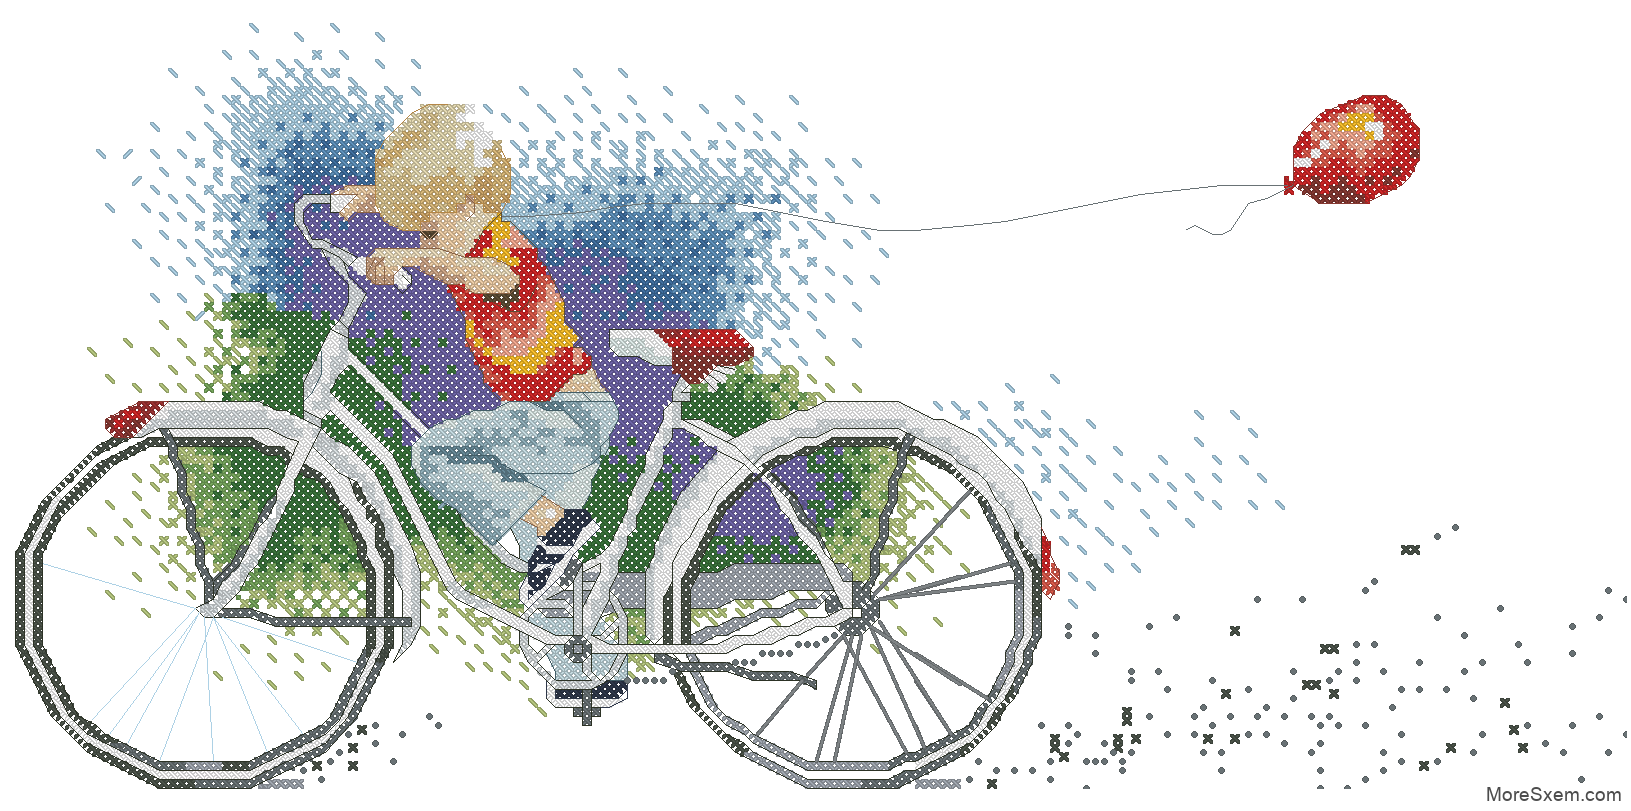 Мальчик на велосипеде